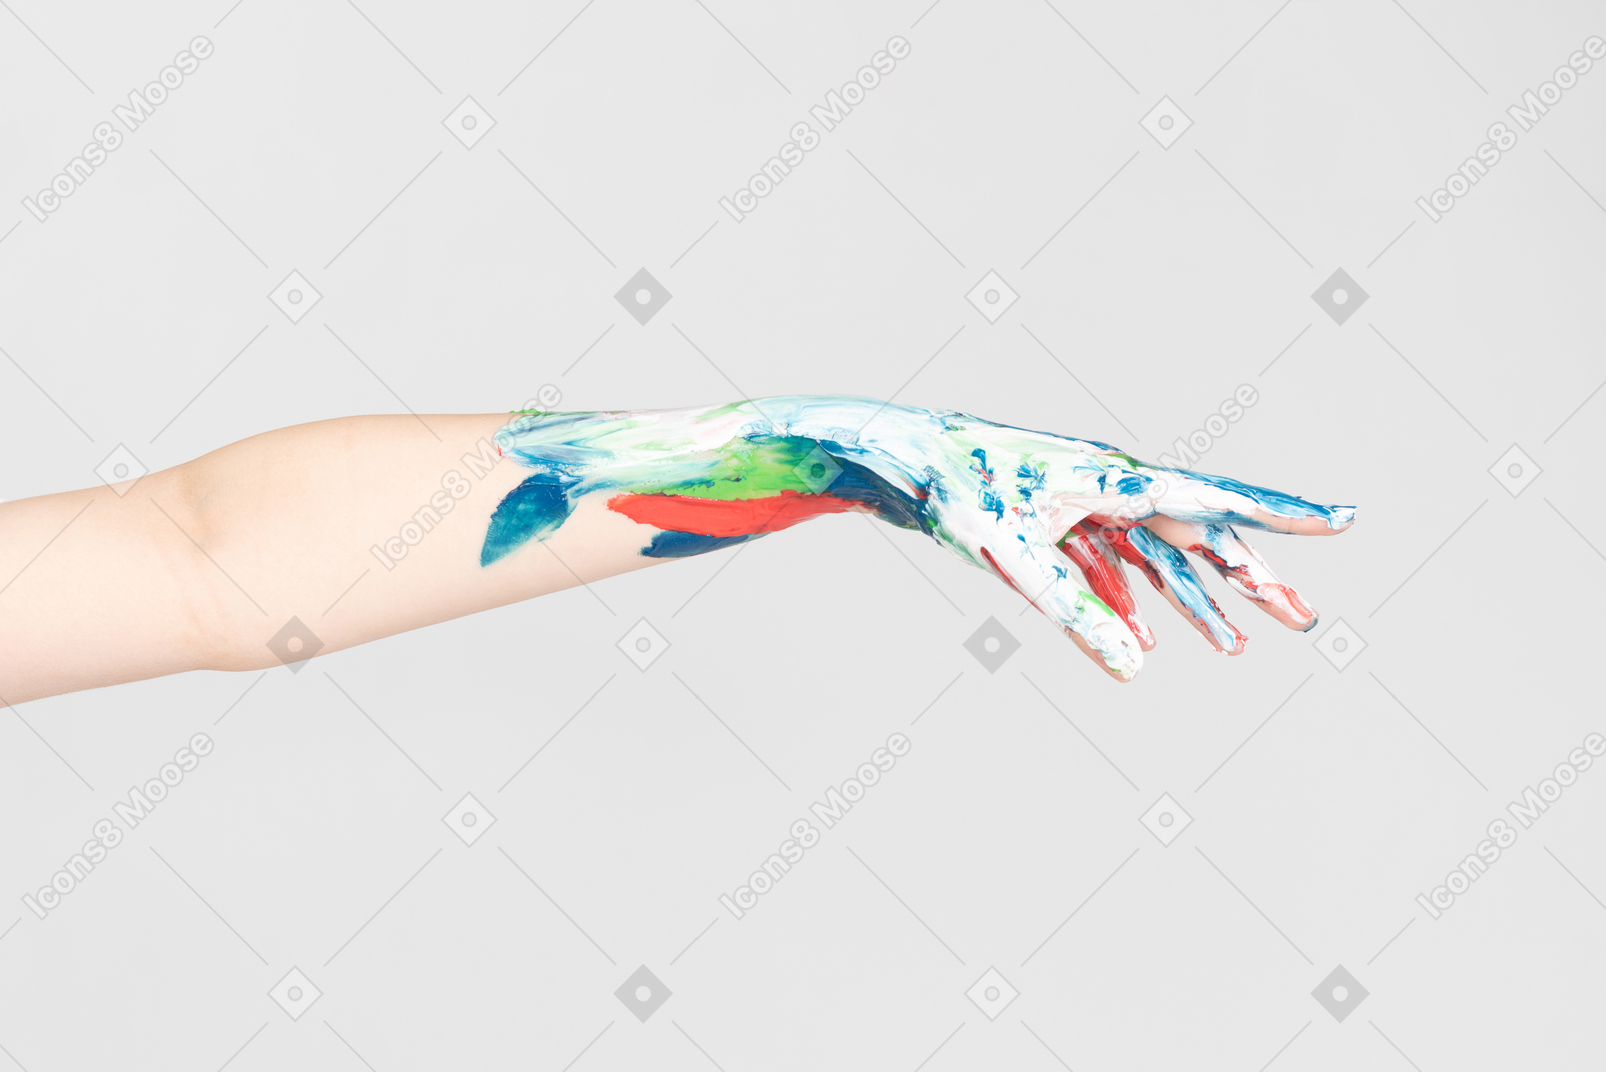 Bemalte weibliche hand